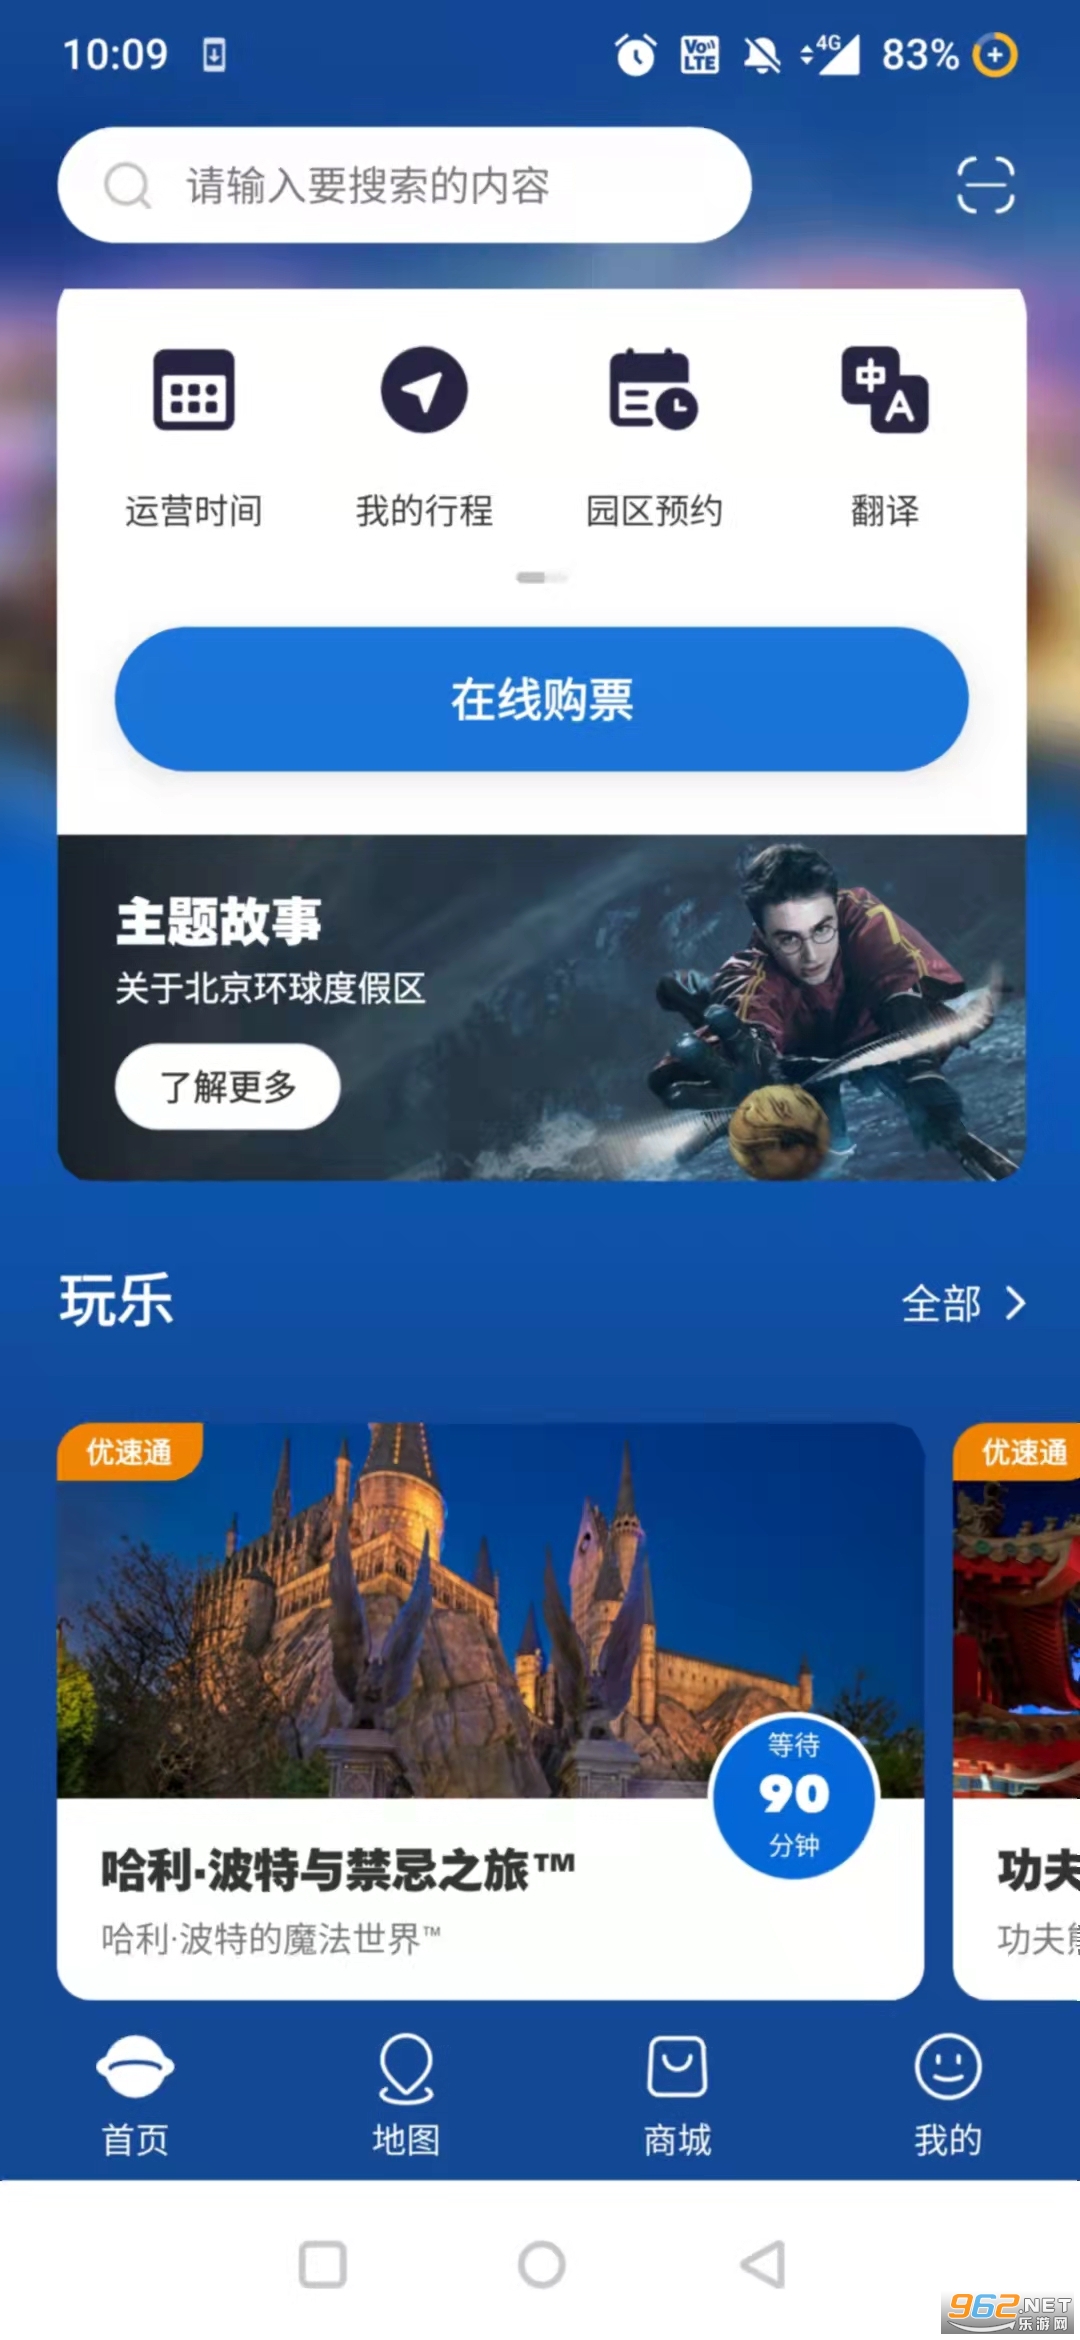 北京环球度假区appv3.2.2 (一票畅游北京环游影城)截图2